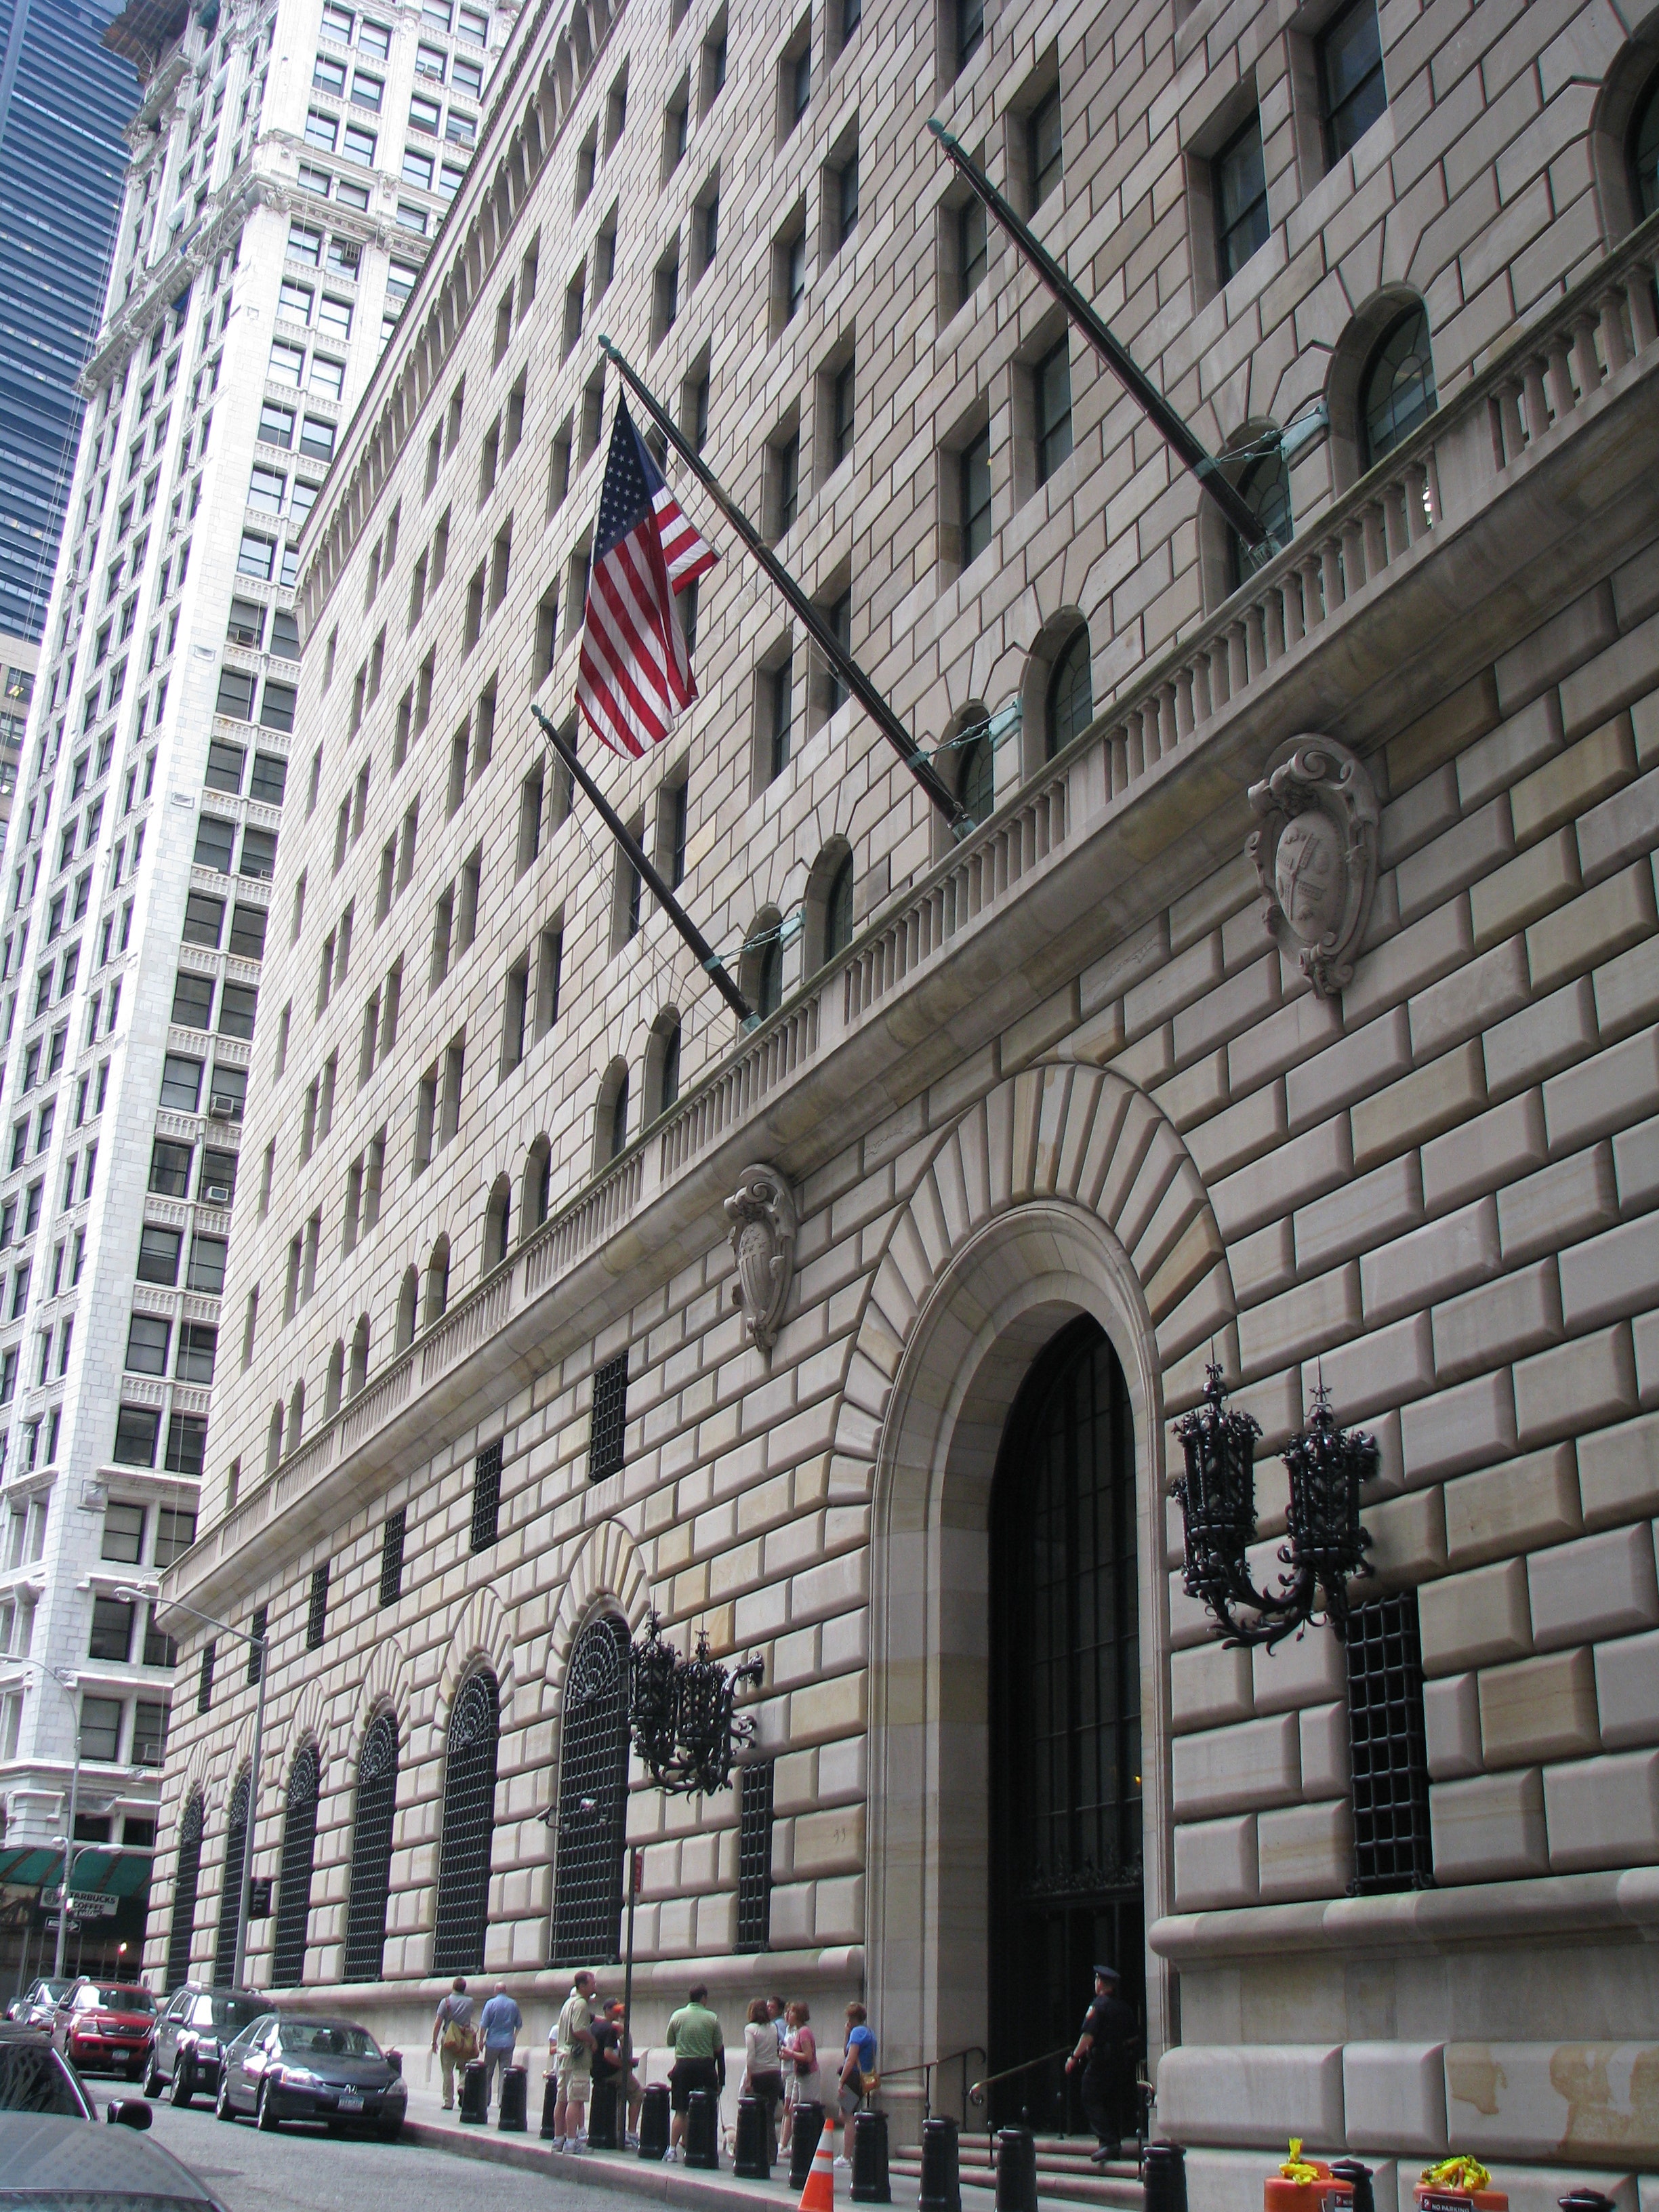 Государственный резервный банк. Федеральный резервный банк Нью-Йорка. Национальный банк Фринка в Нью-Йорке. Здание национального банка Фринка в Нью-Йорке. Здание ФРС США В Нью-Йорке.